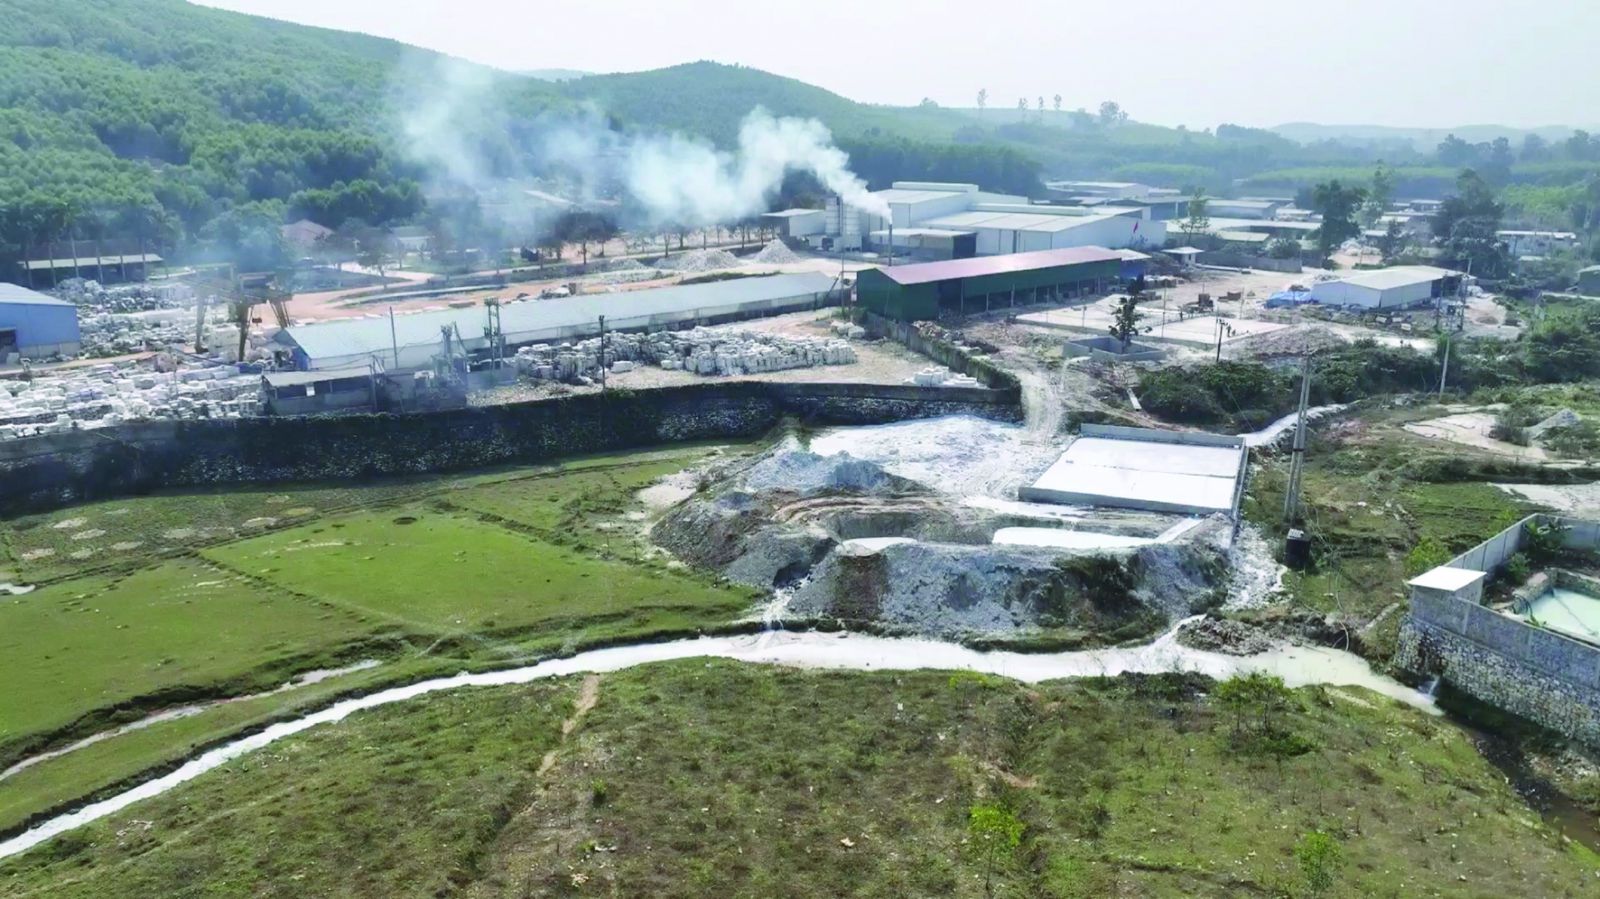 p/Quỳ Hợp nơi được ví như “thủ phủ” khoáng sản của tỉnh Nghệ An có thể dễ dàng nhận thấy các đại công xưởng chế tác đá trắng - một loại khoáng sản có giá trị kinh tế cao của nước ta 